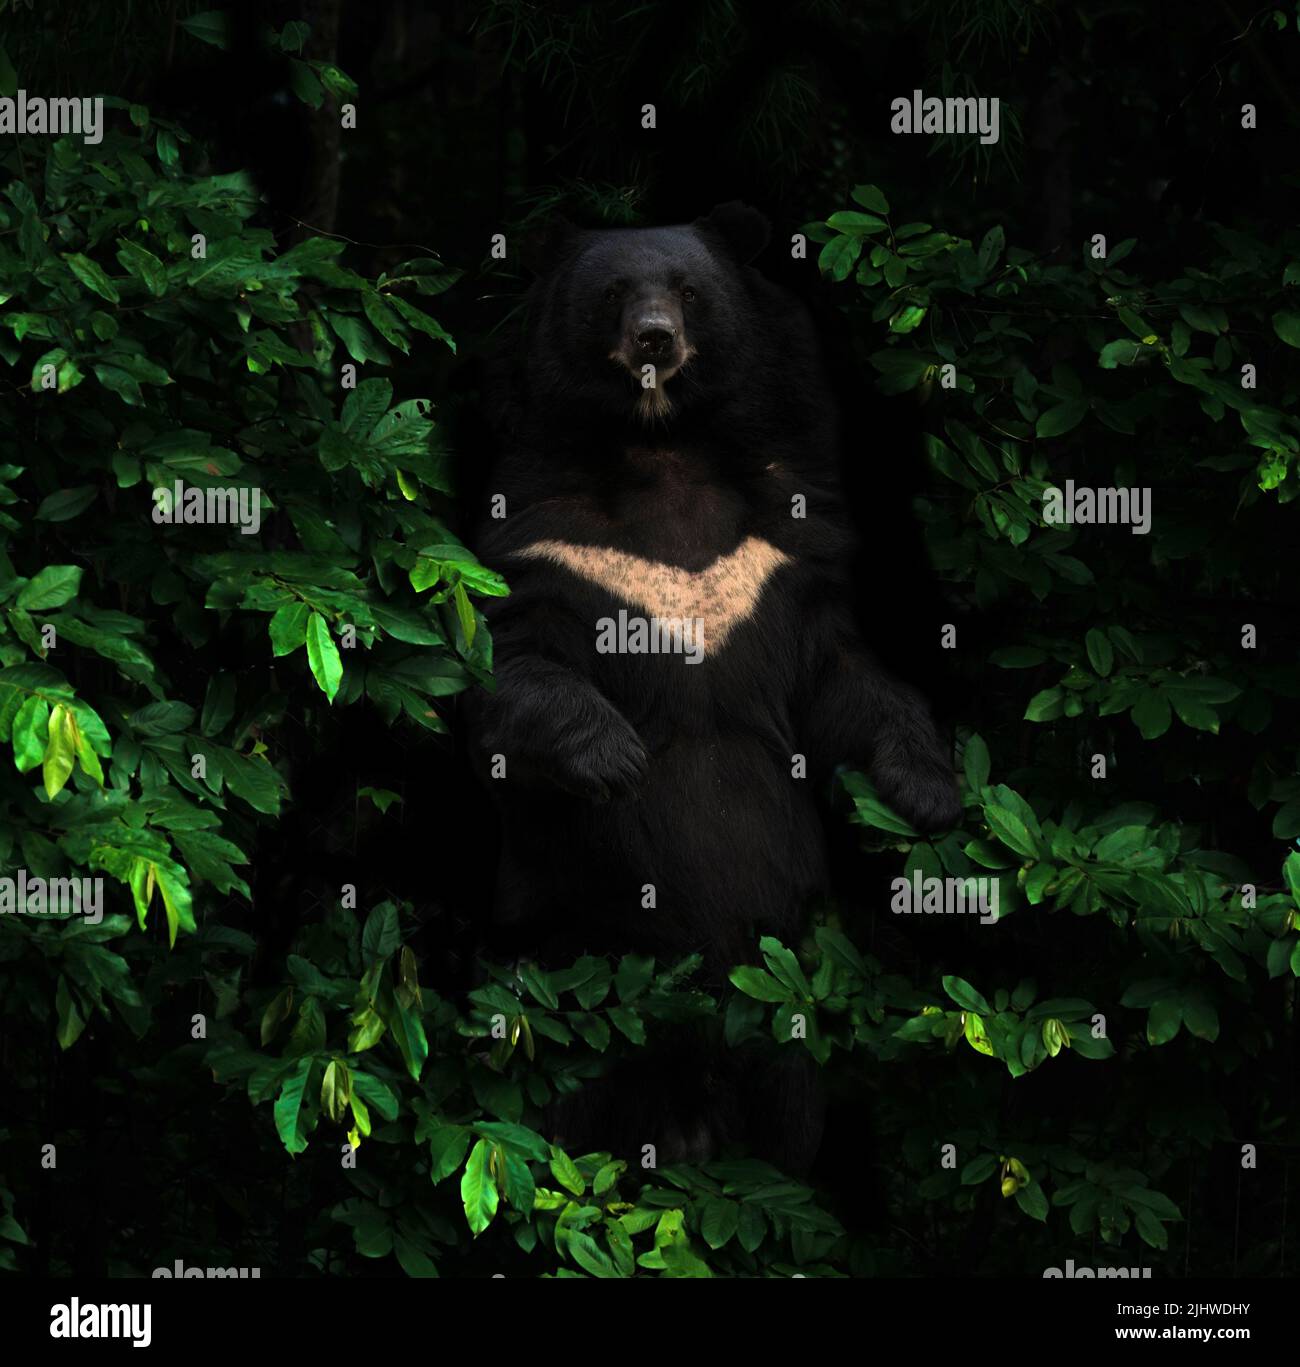 oso negro asiático parado en el oscuro bosque tropical Foto de stock